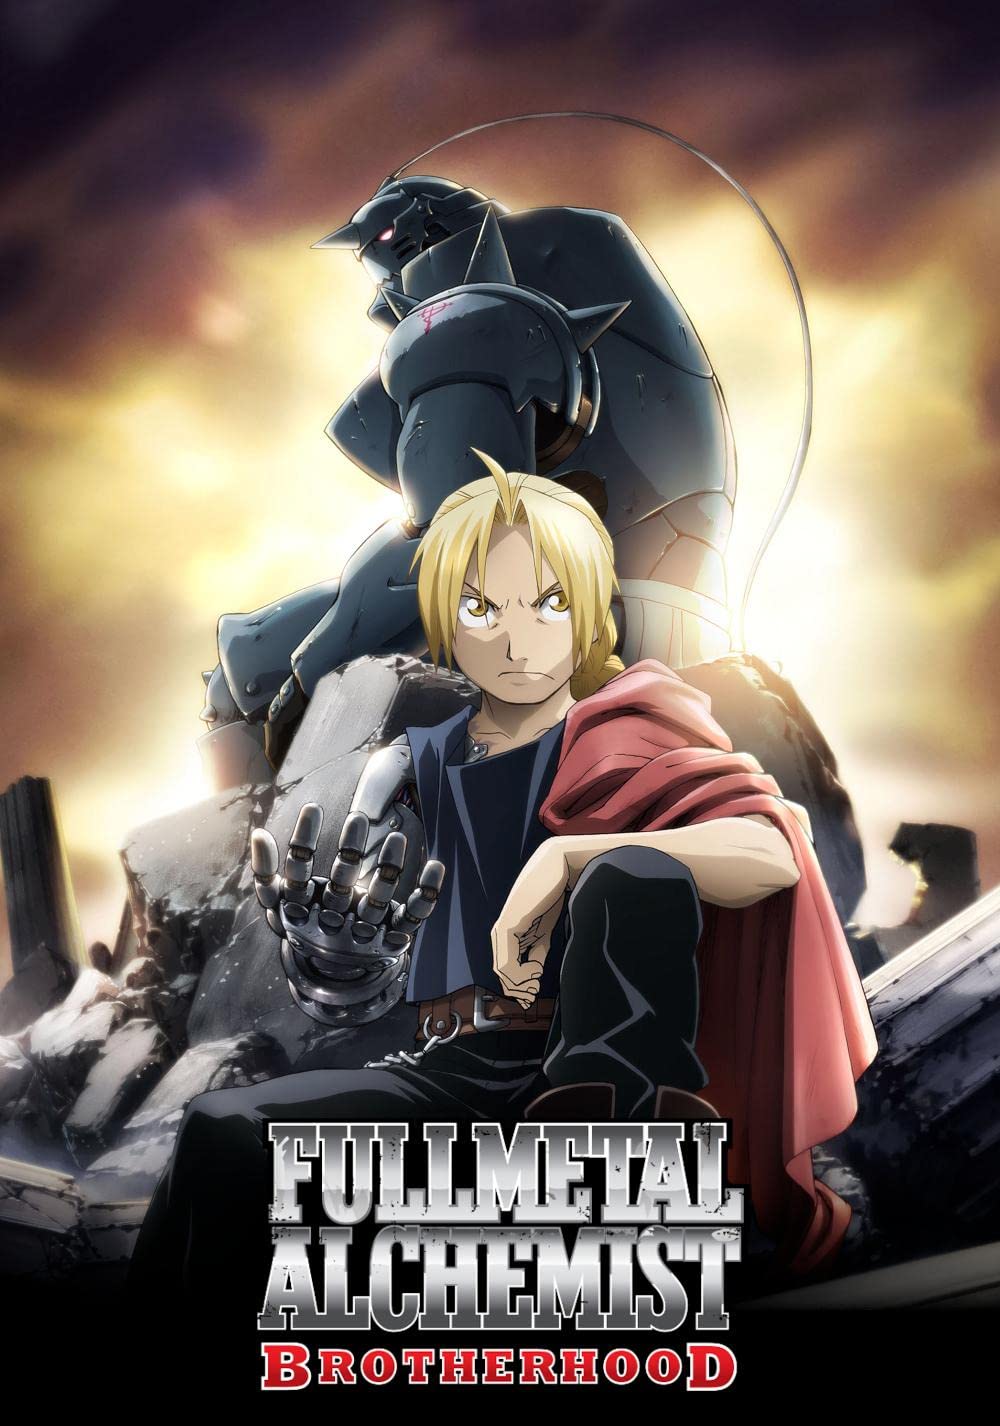 ดูหนังออนไลน์ Fullmetal Alchemist ss3 (2009)EP.3 แขนกลคนแปรธาตุ ภาค 3 ตอนที่ 3 (ซับไทย)